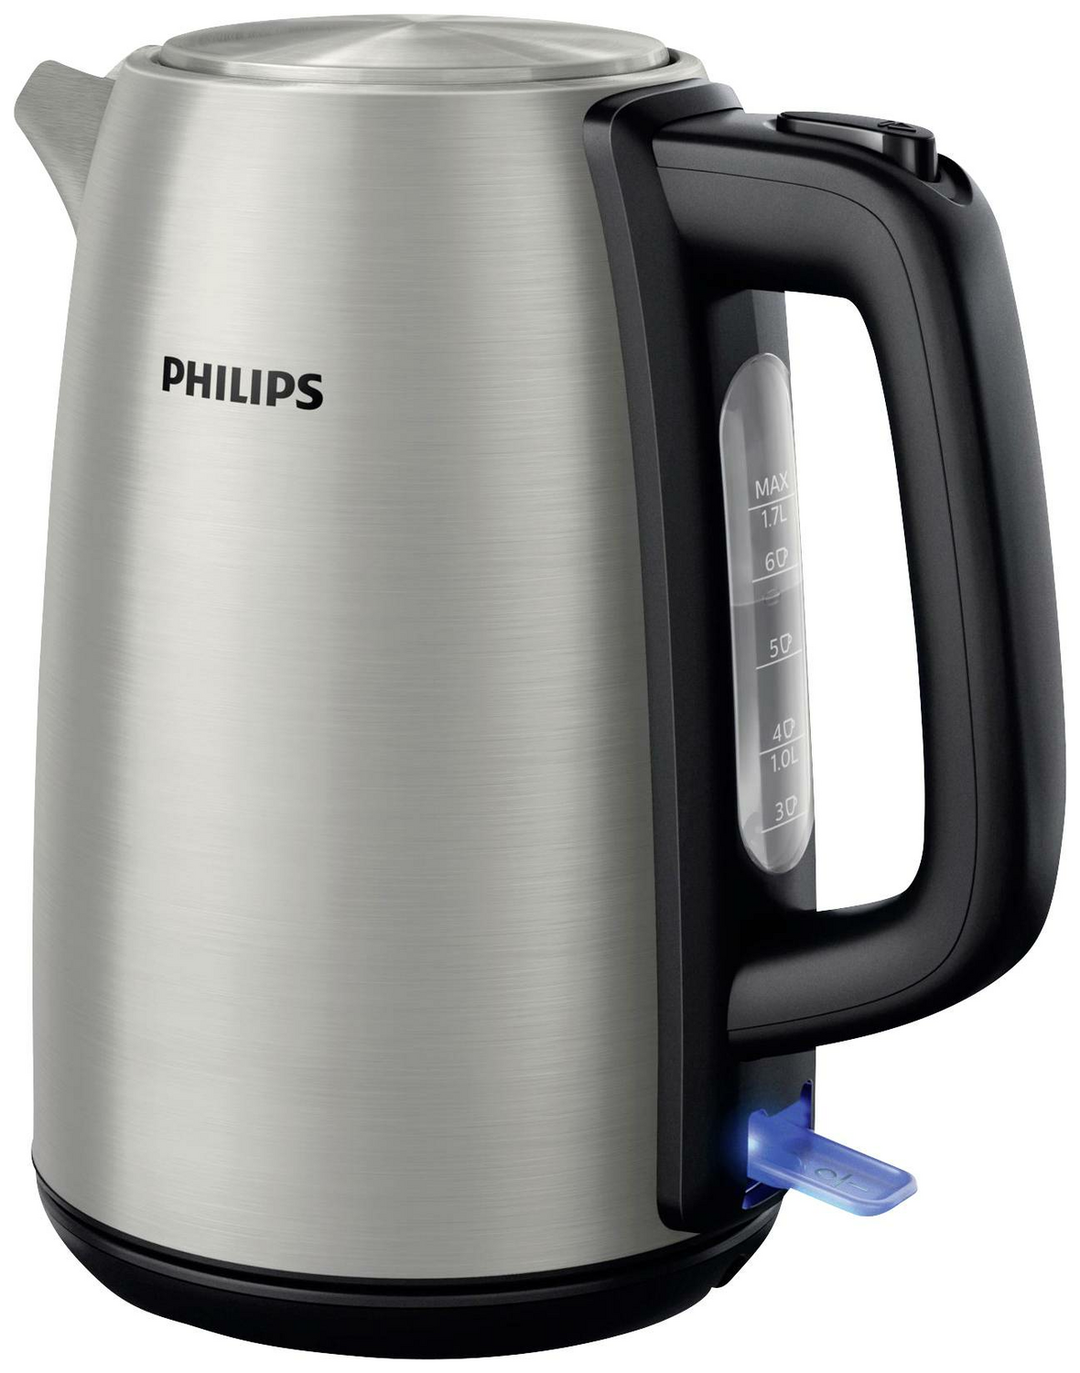 Philips Wasserkocher Wasser Kocher schnurlos 2200 W 1.7 l rostfreier Edelstahl